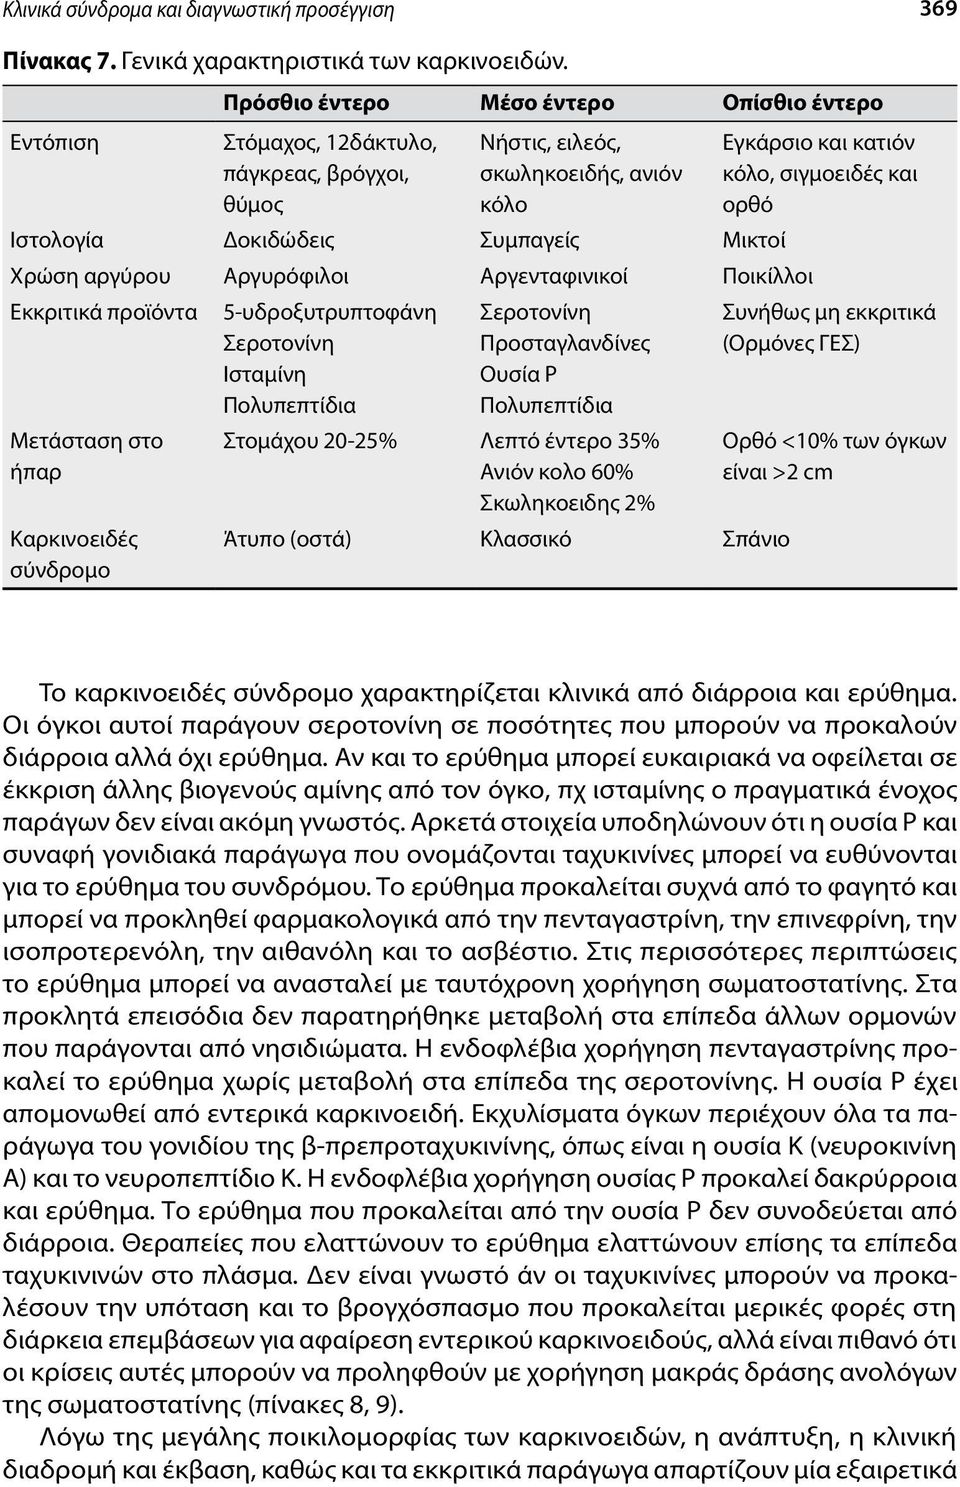 Αργυρόφιλοι Αργενταφινικοί Ποικίλλοι Εκκριτικά προϊόντα Μετάσταση στο ήπαρ Καρκινοειδές σύνδρομο 5-υδροξυτρυπτοφάνη Σεροτονίνη Ισταμίνη Πολυπεπτίδια Σεροτονίνη Προσταγλανδίνες Oυσία P Πολυπεπτίδια